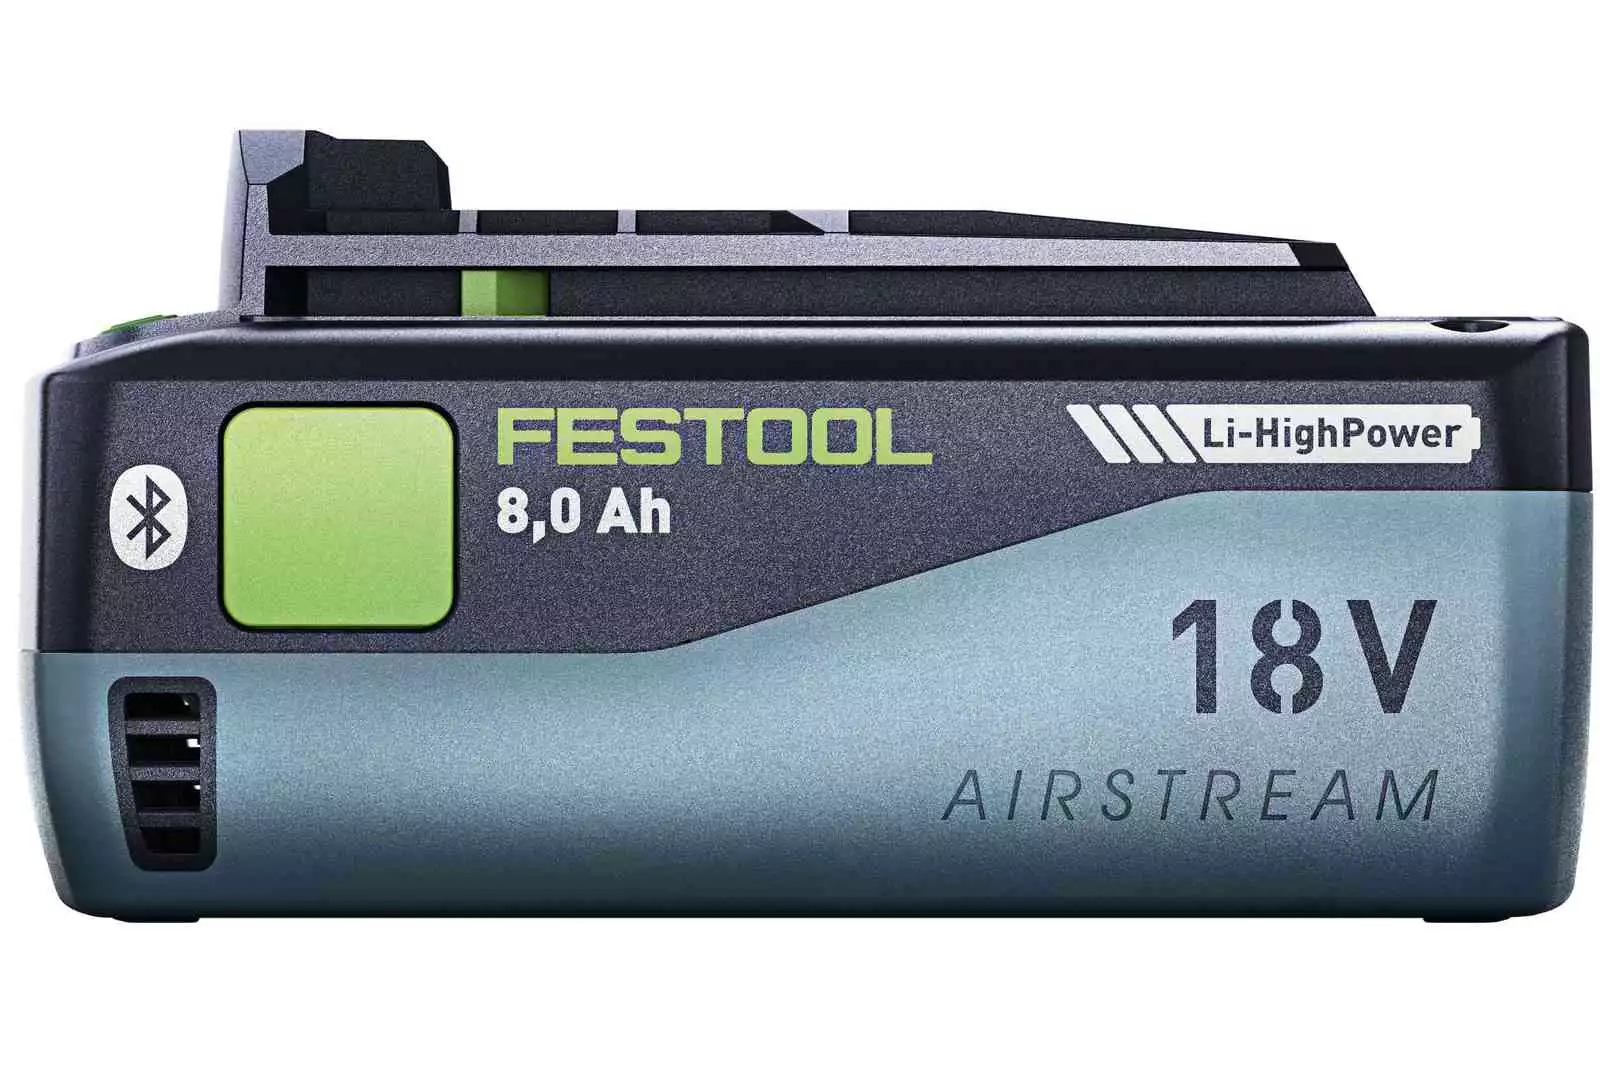 Festool's new 8 ah high power battery pack